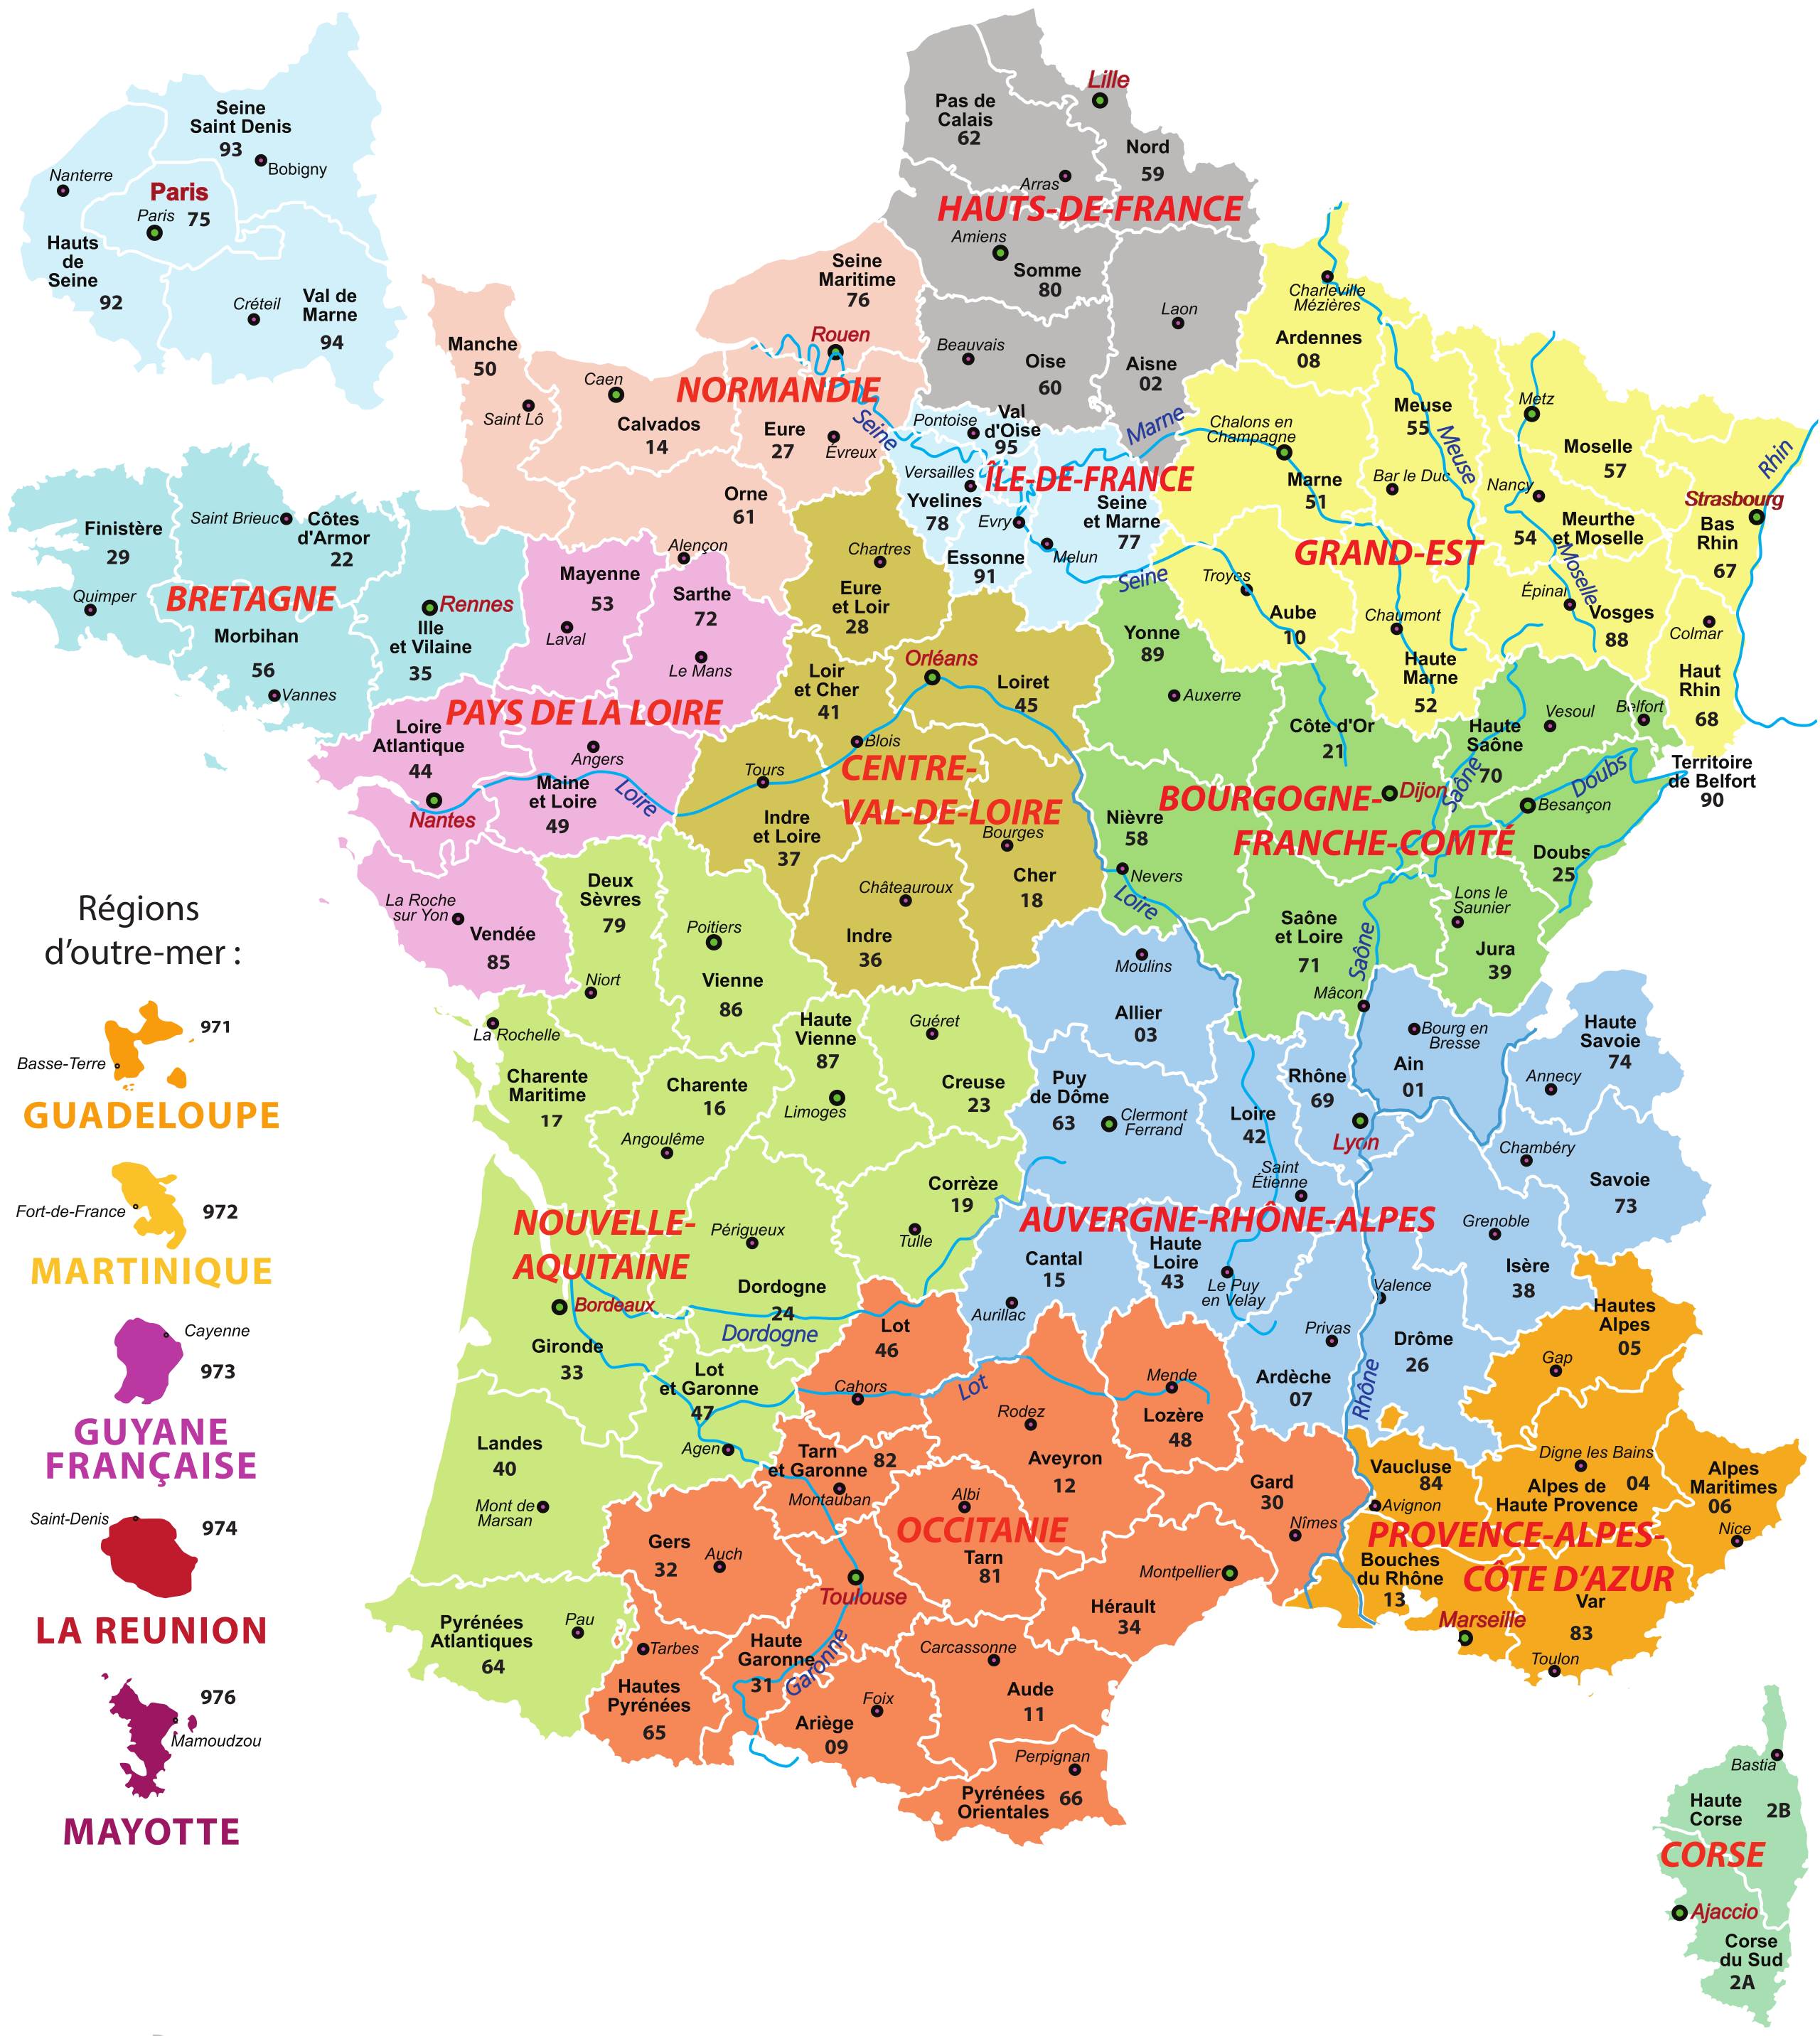 tight Bridge pier truth CARTES DE FRANCE : cartes des régions, départements et villes de France